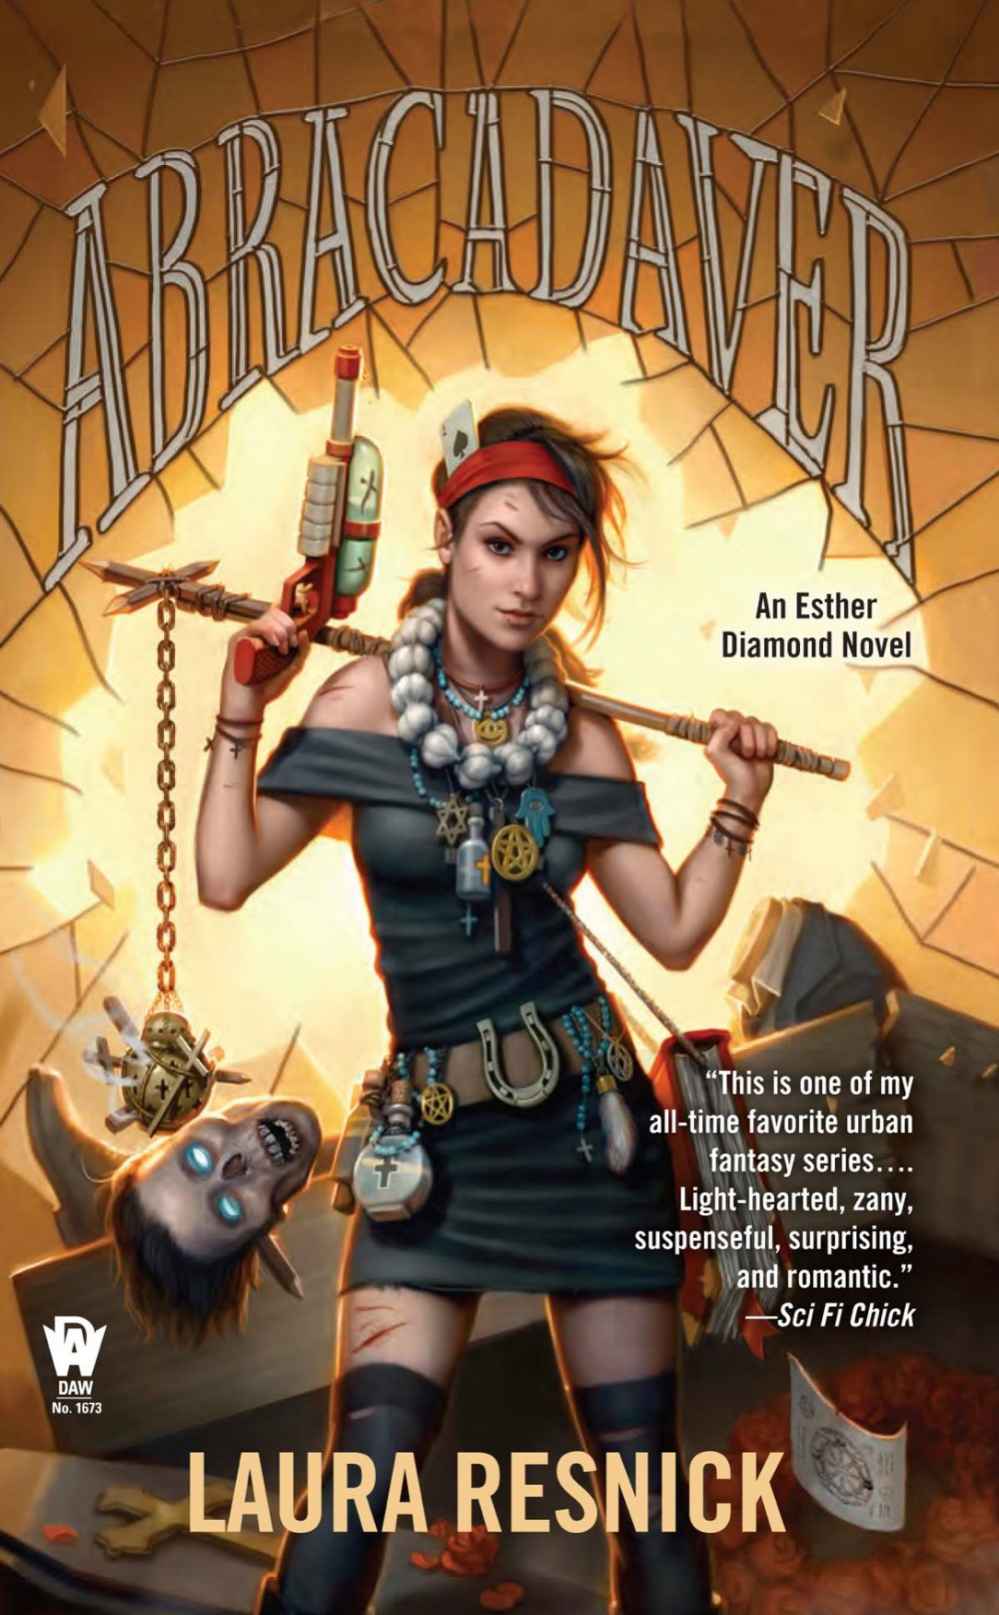 Abracadaver (Esther Diamond Novel)